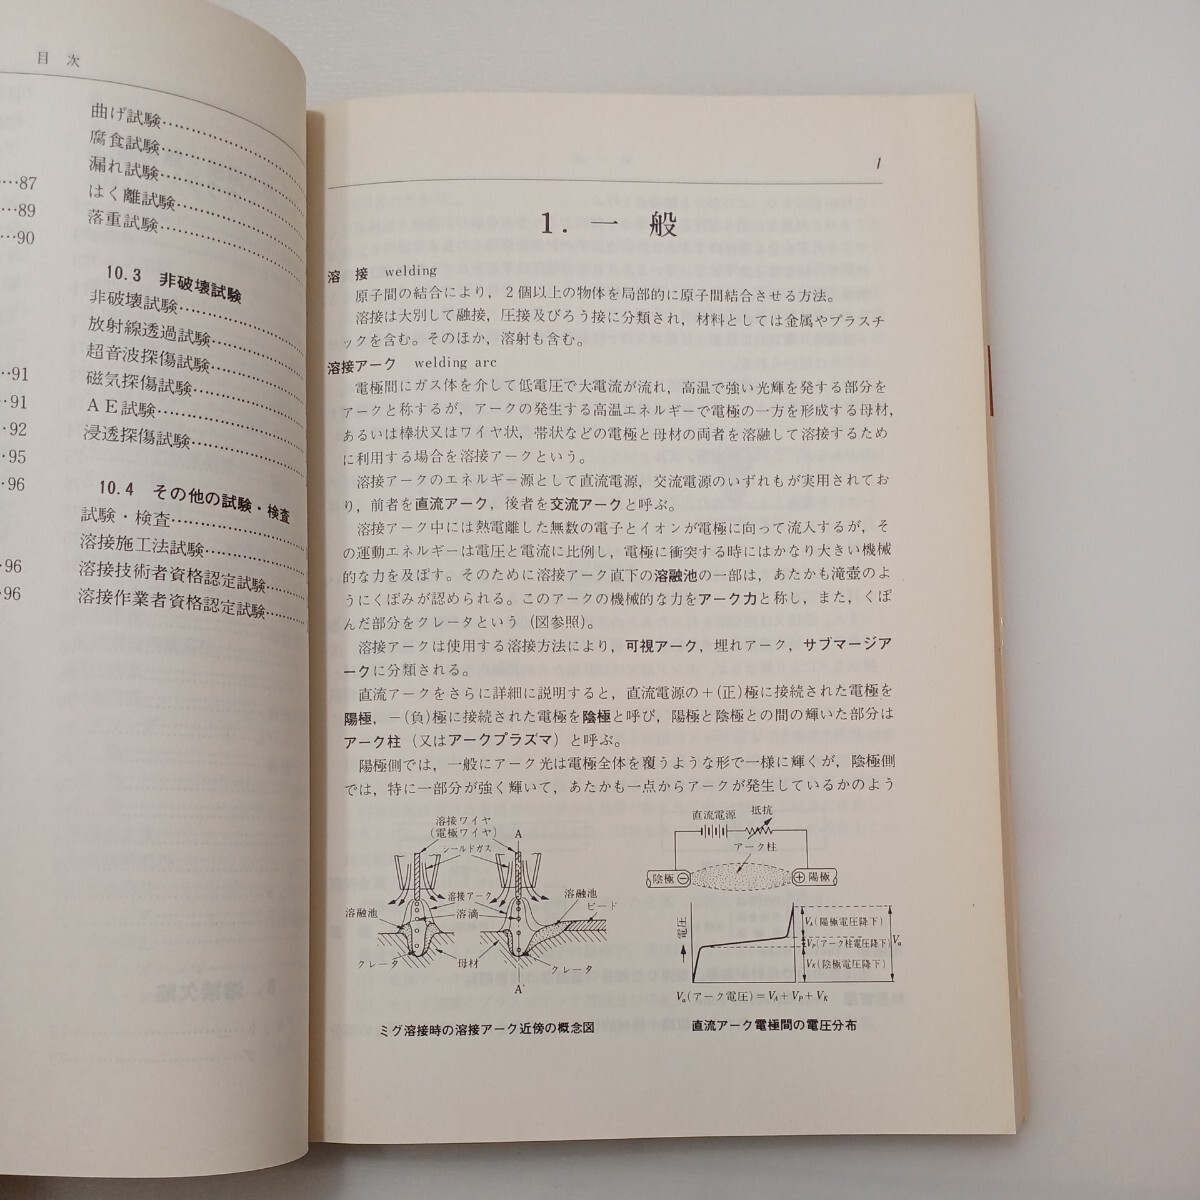 zaa-578♪溶接用語事典 　溶接学会(編) 　産報出版 (1981/4/25)